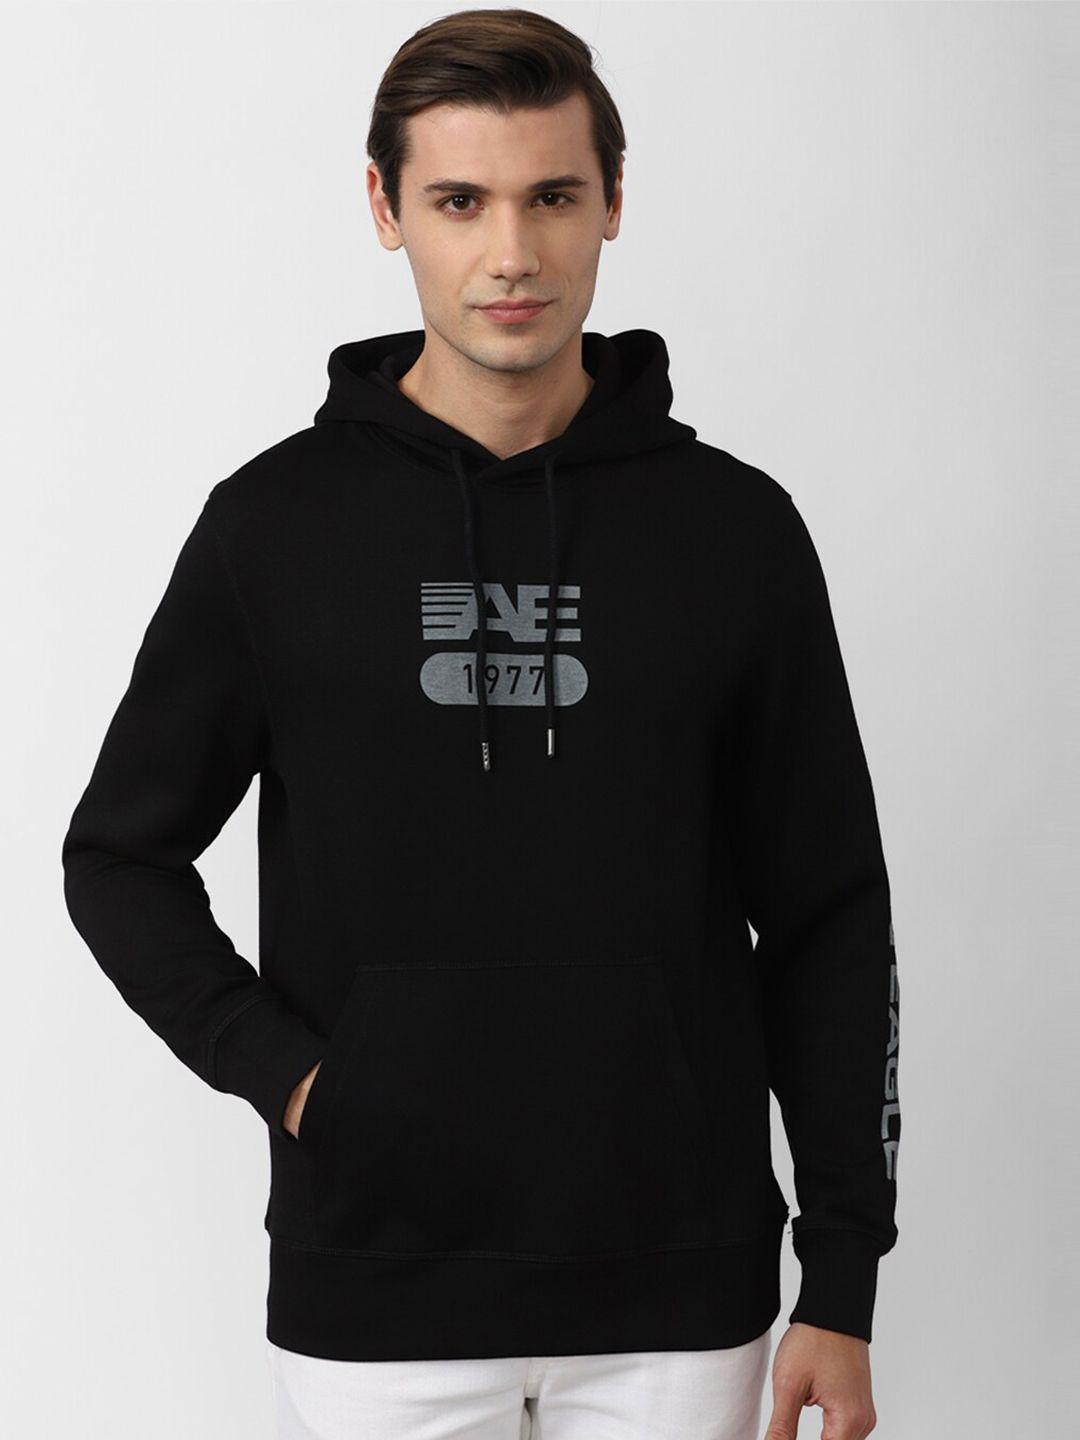 american eagle outfitters men black printed hooded sweatshirt